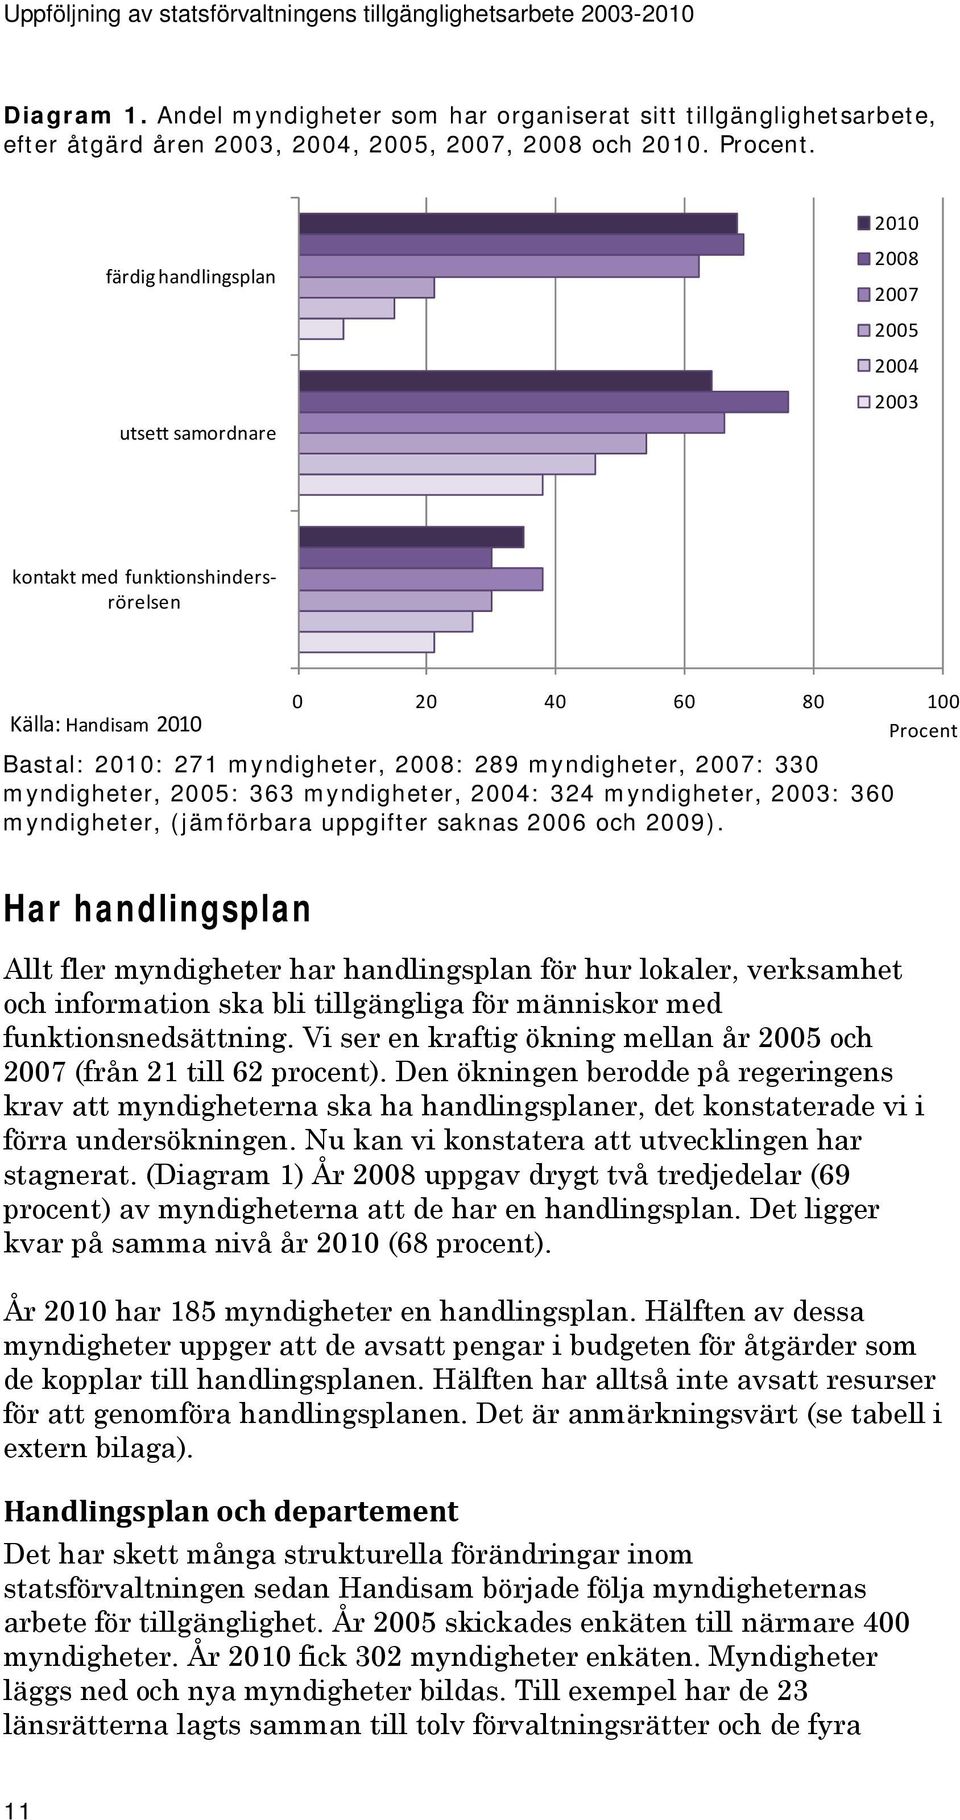 myndigheter, 2007: 330 myndigheter, 2005: 363 myndigheter, 2004: 324 myndigheter, 2003: 360 myndigheter, (jämförbara uppgifter saknas 2006 och 2009).